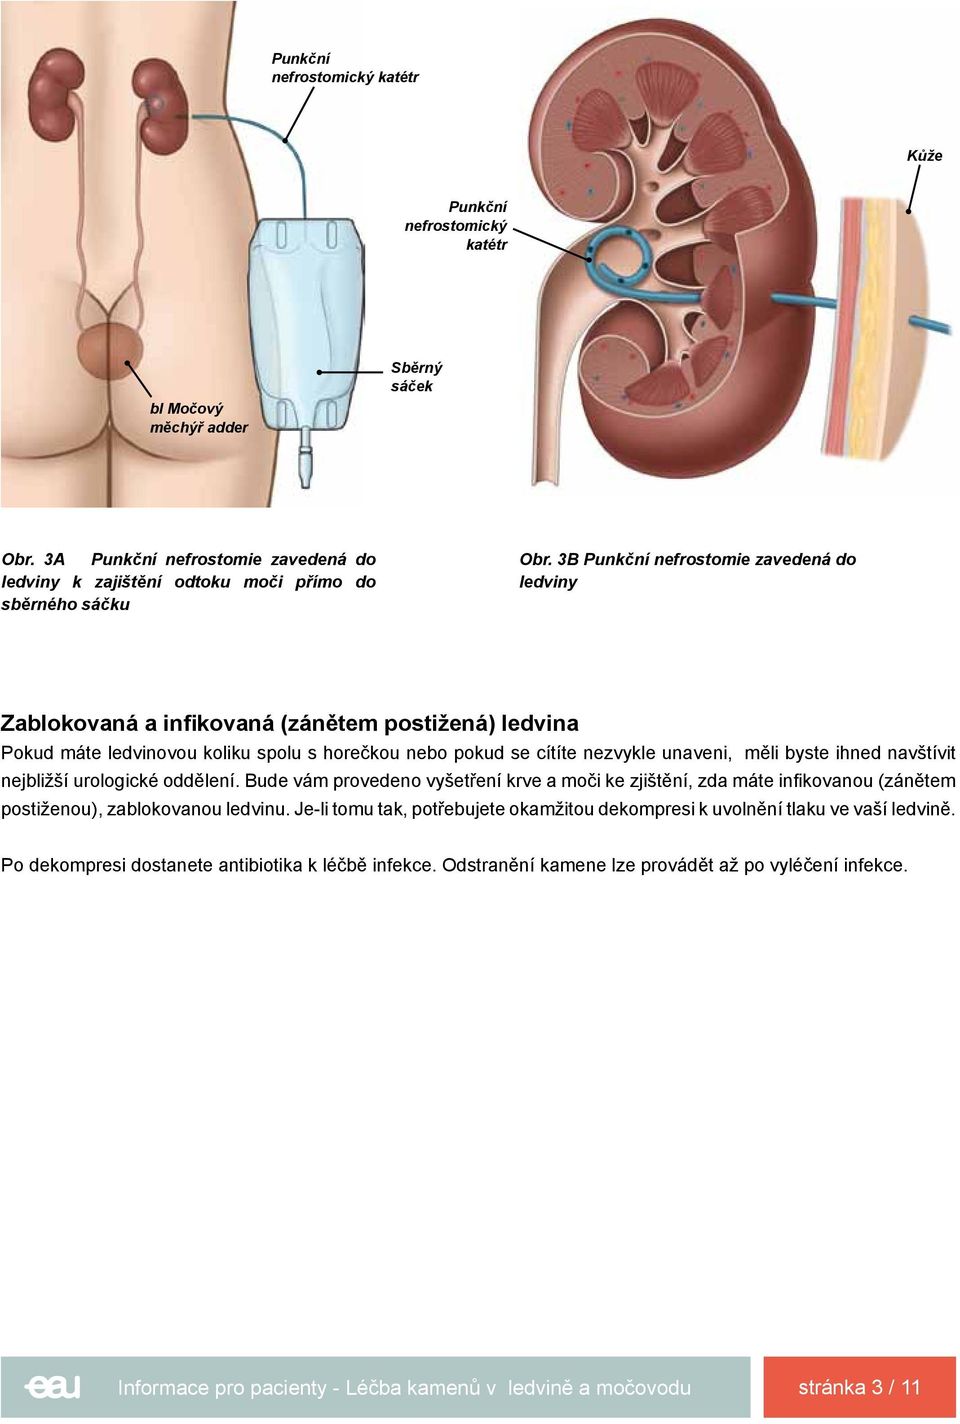 3B Punkční nefrostomie zavedená do ledviny Zablokovaná a infikovaná (zánětem postižená) ledvina Pokud máte ledvinovou koliku spolu s horečkou nebo pokud se cítíte nezvykle unaveni, měli